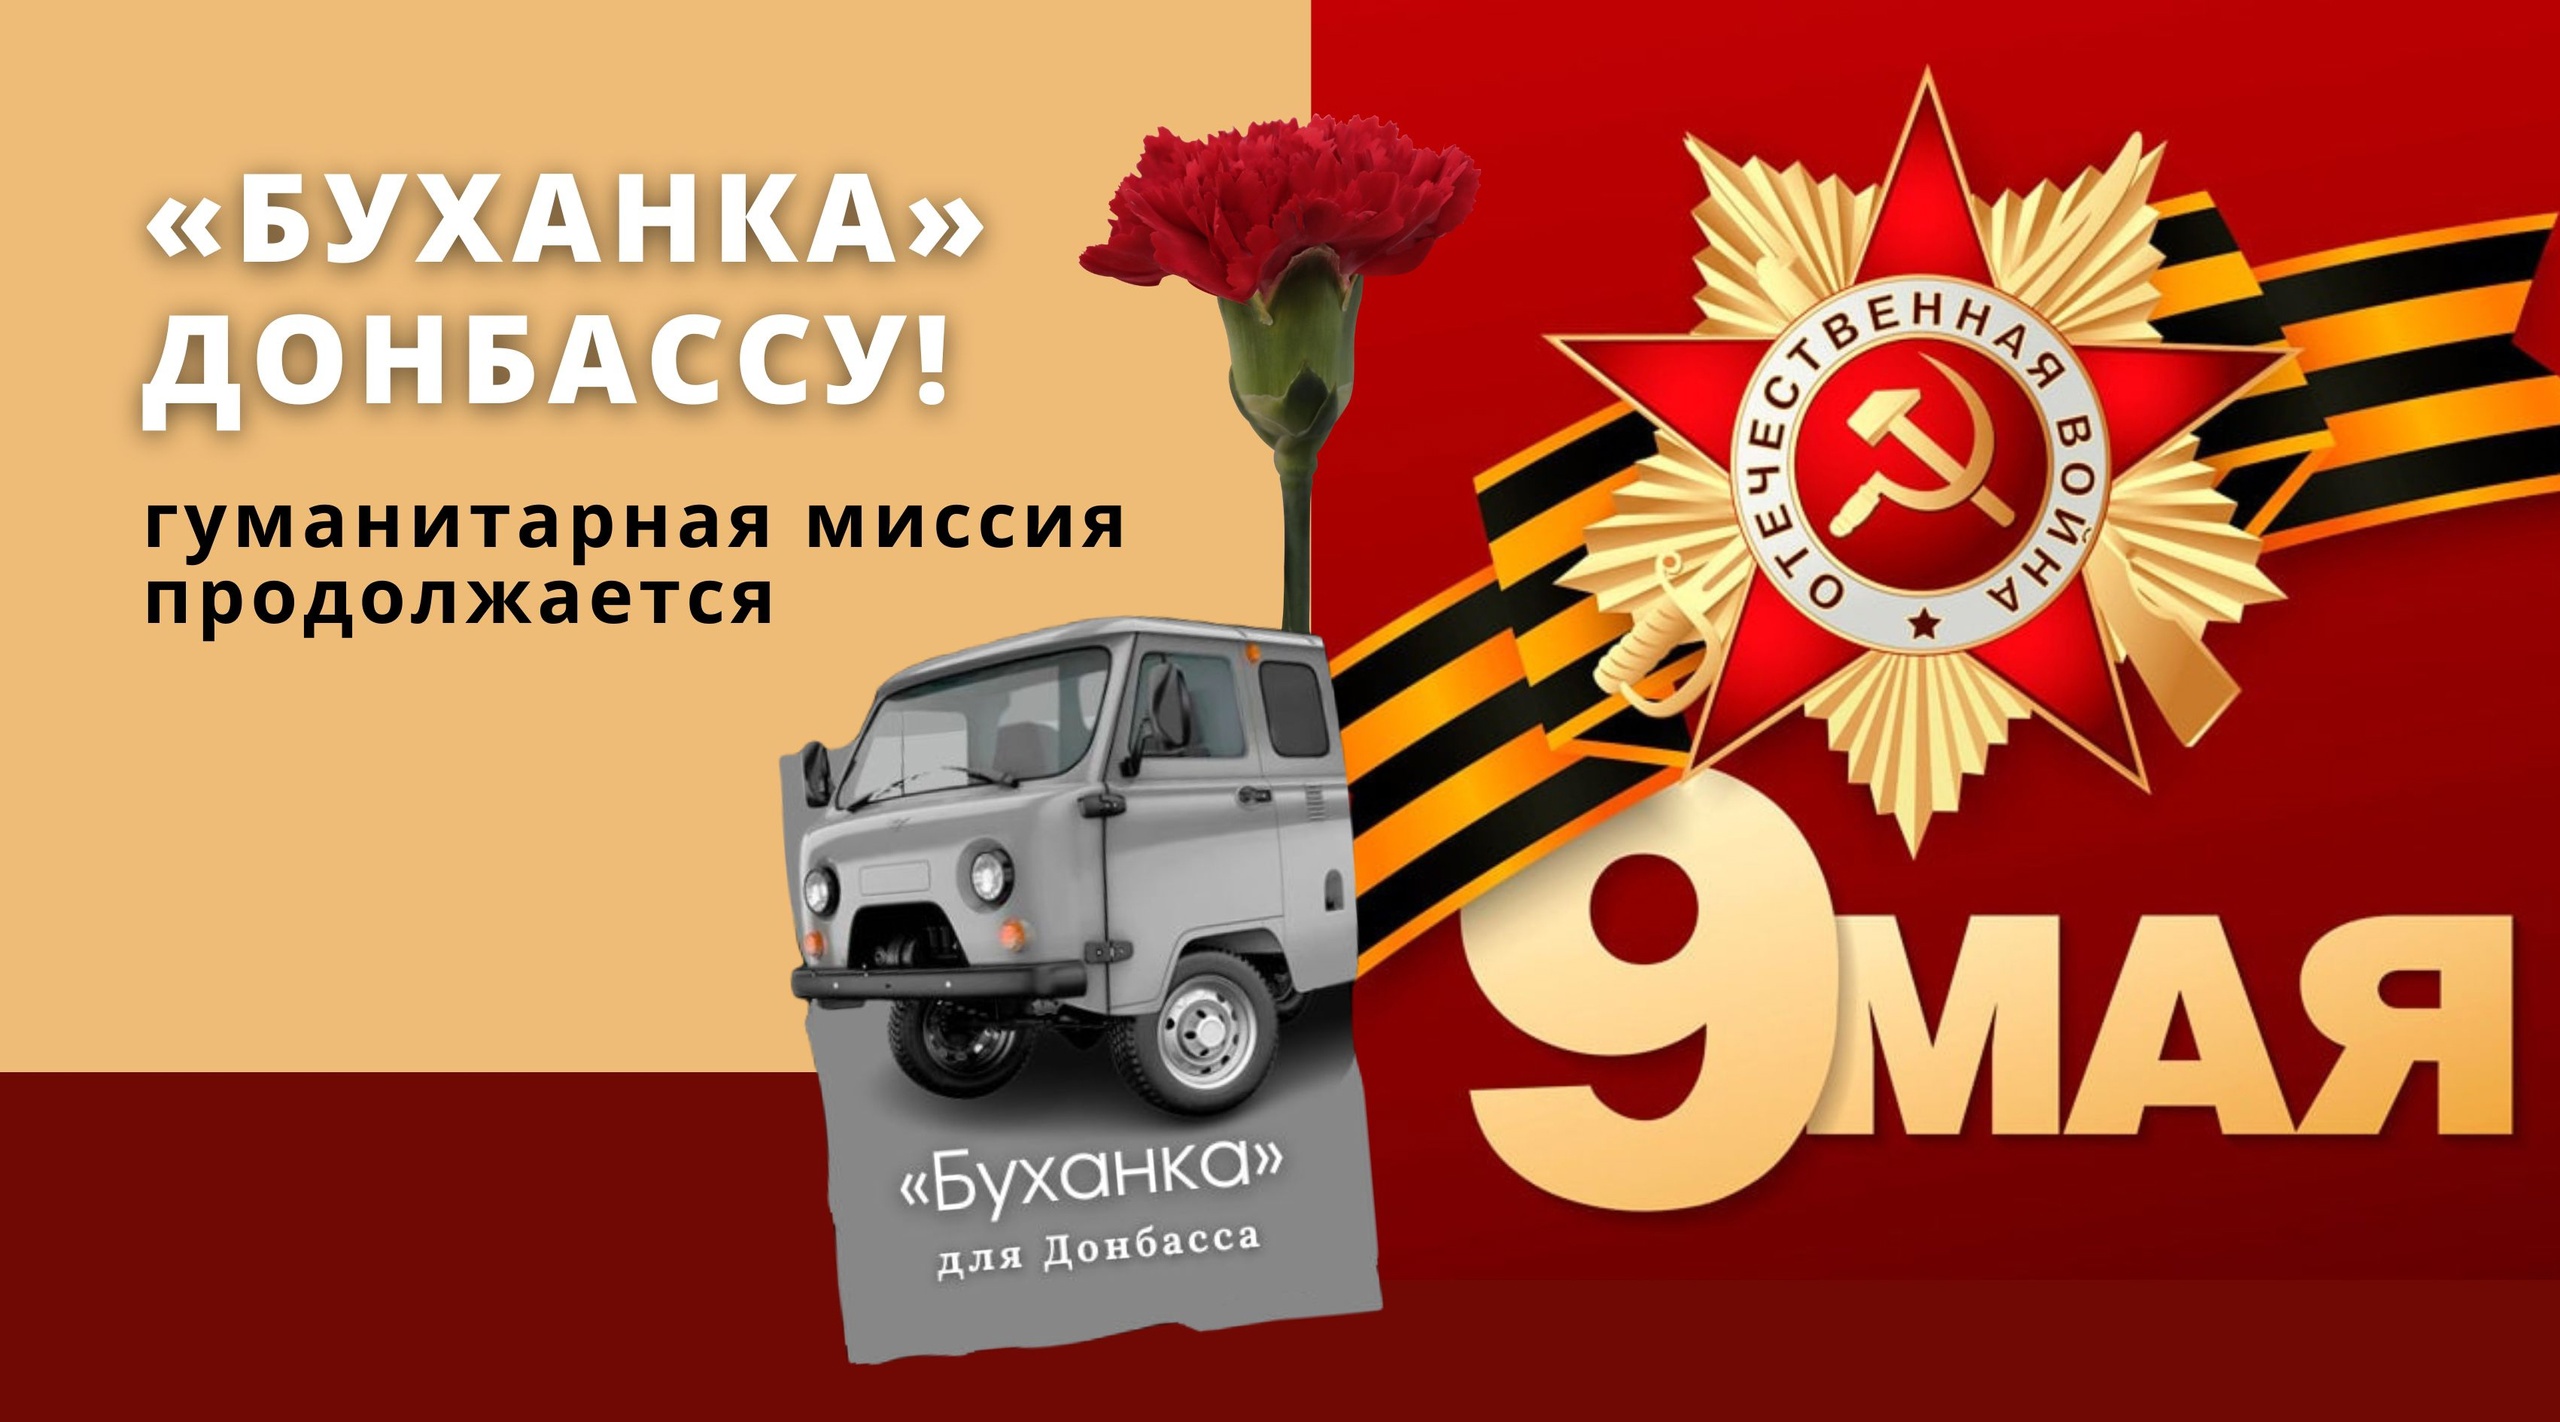 «Буханка для Донбасса» - миссия к 9 Мая